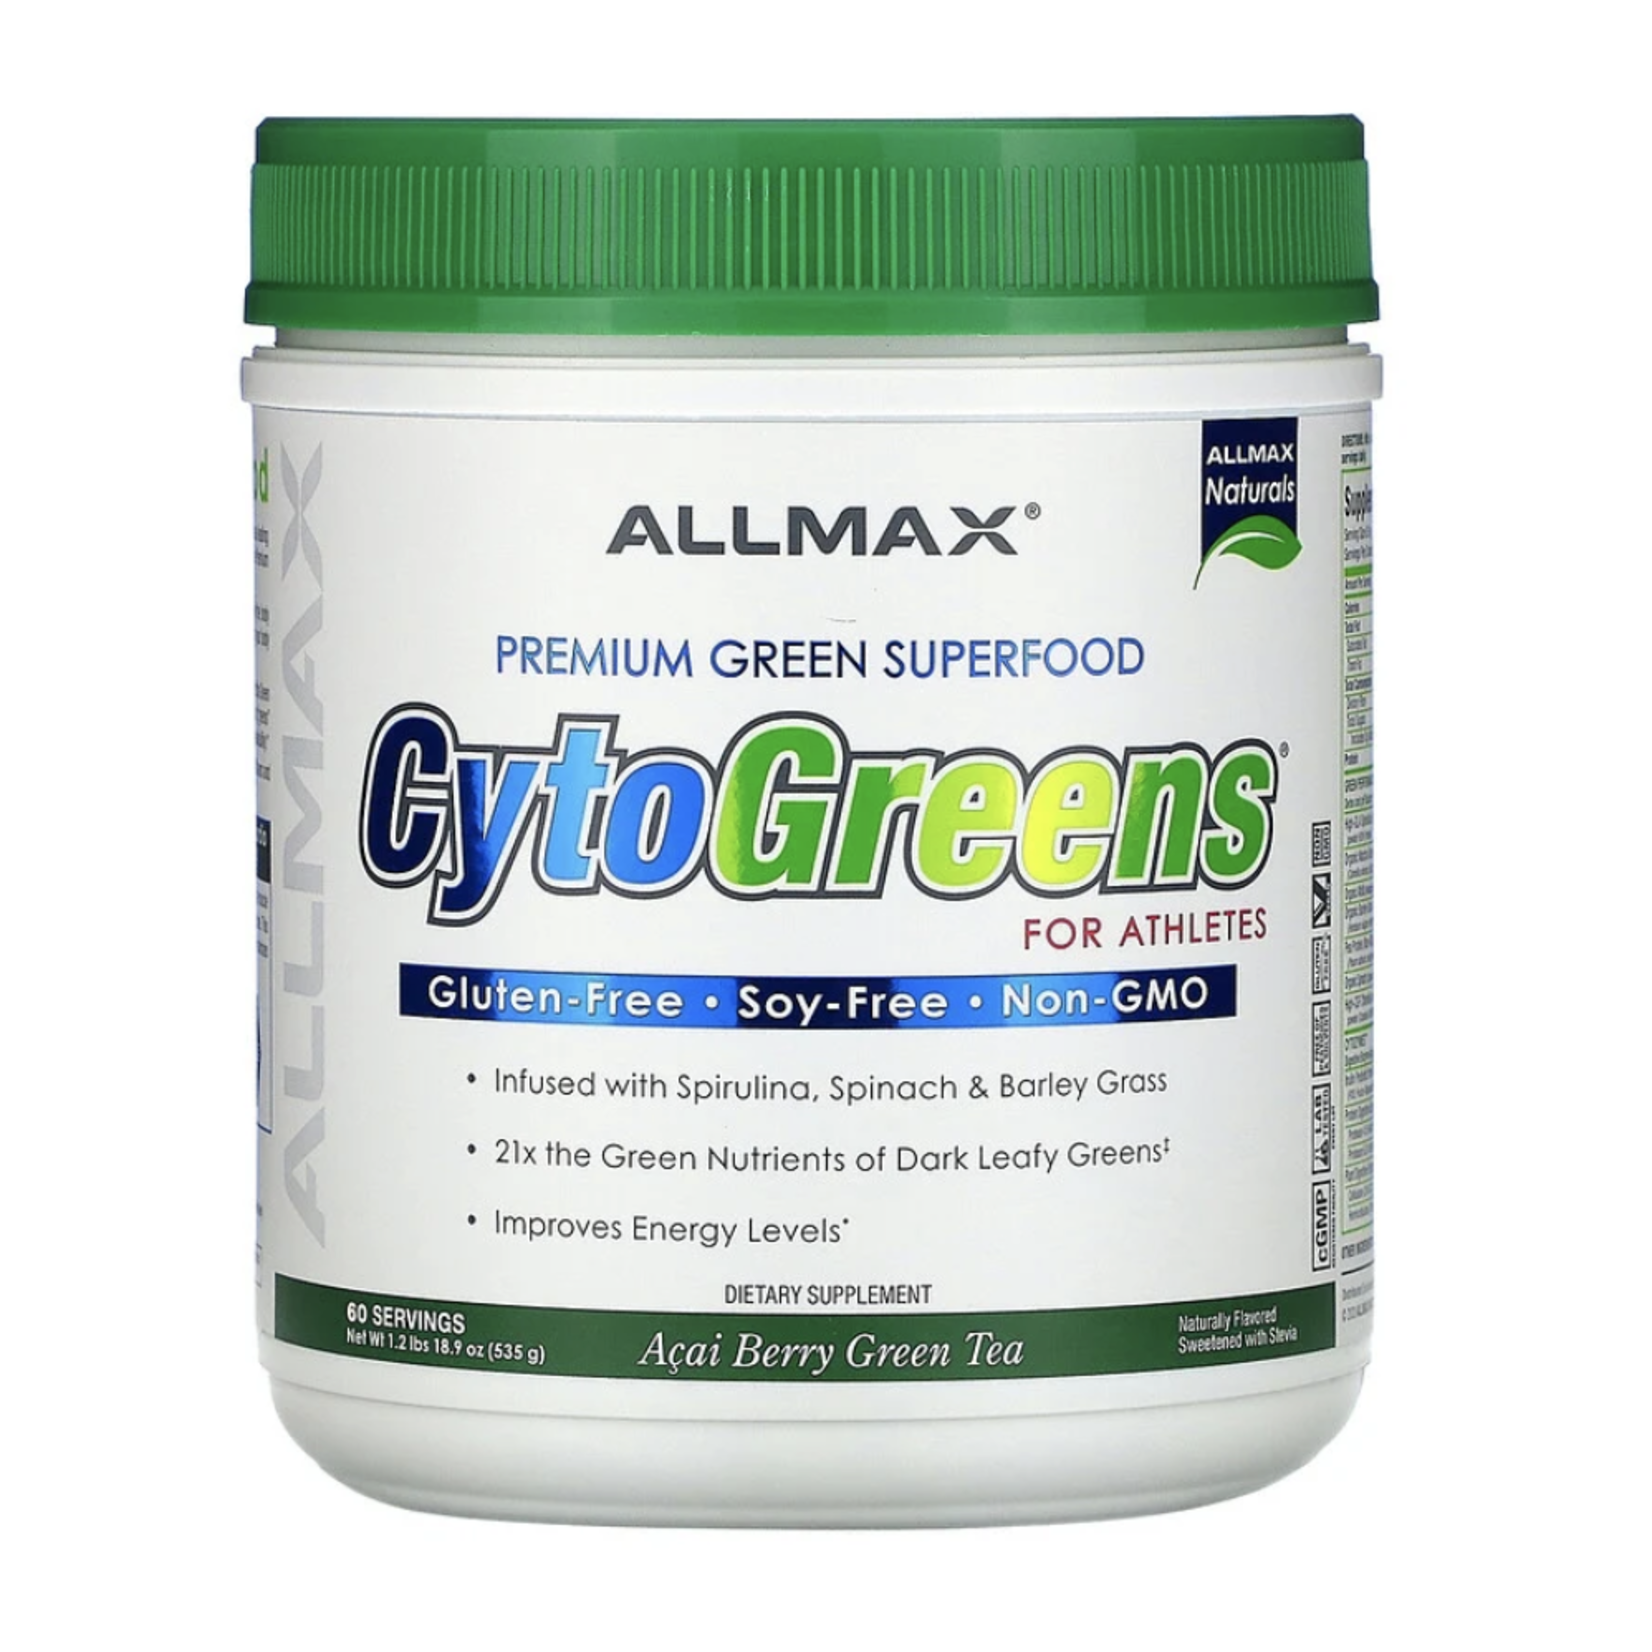 Allmax Nutrition CytoGreens